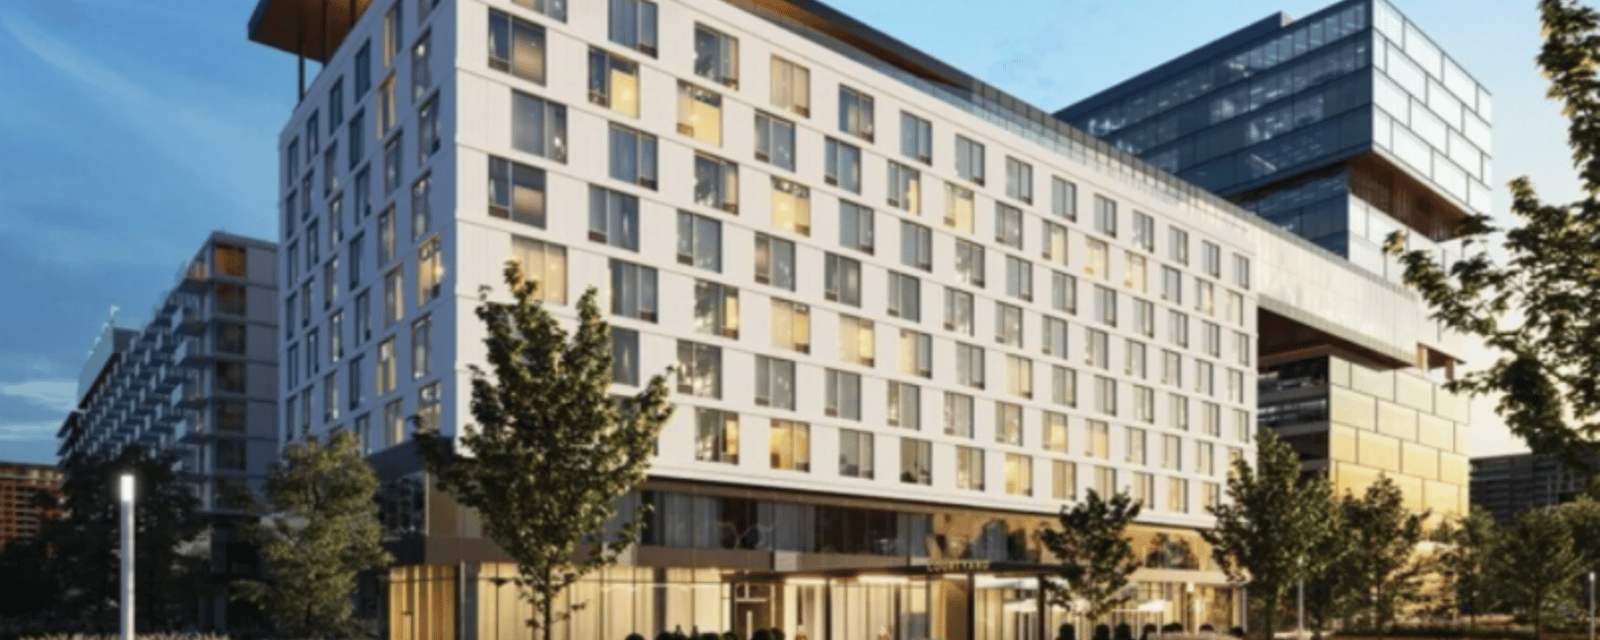 Voyez les impressionnantes images du nouveau complexe hôtelier de luxe à Laval